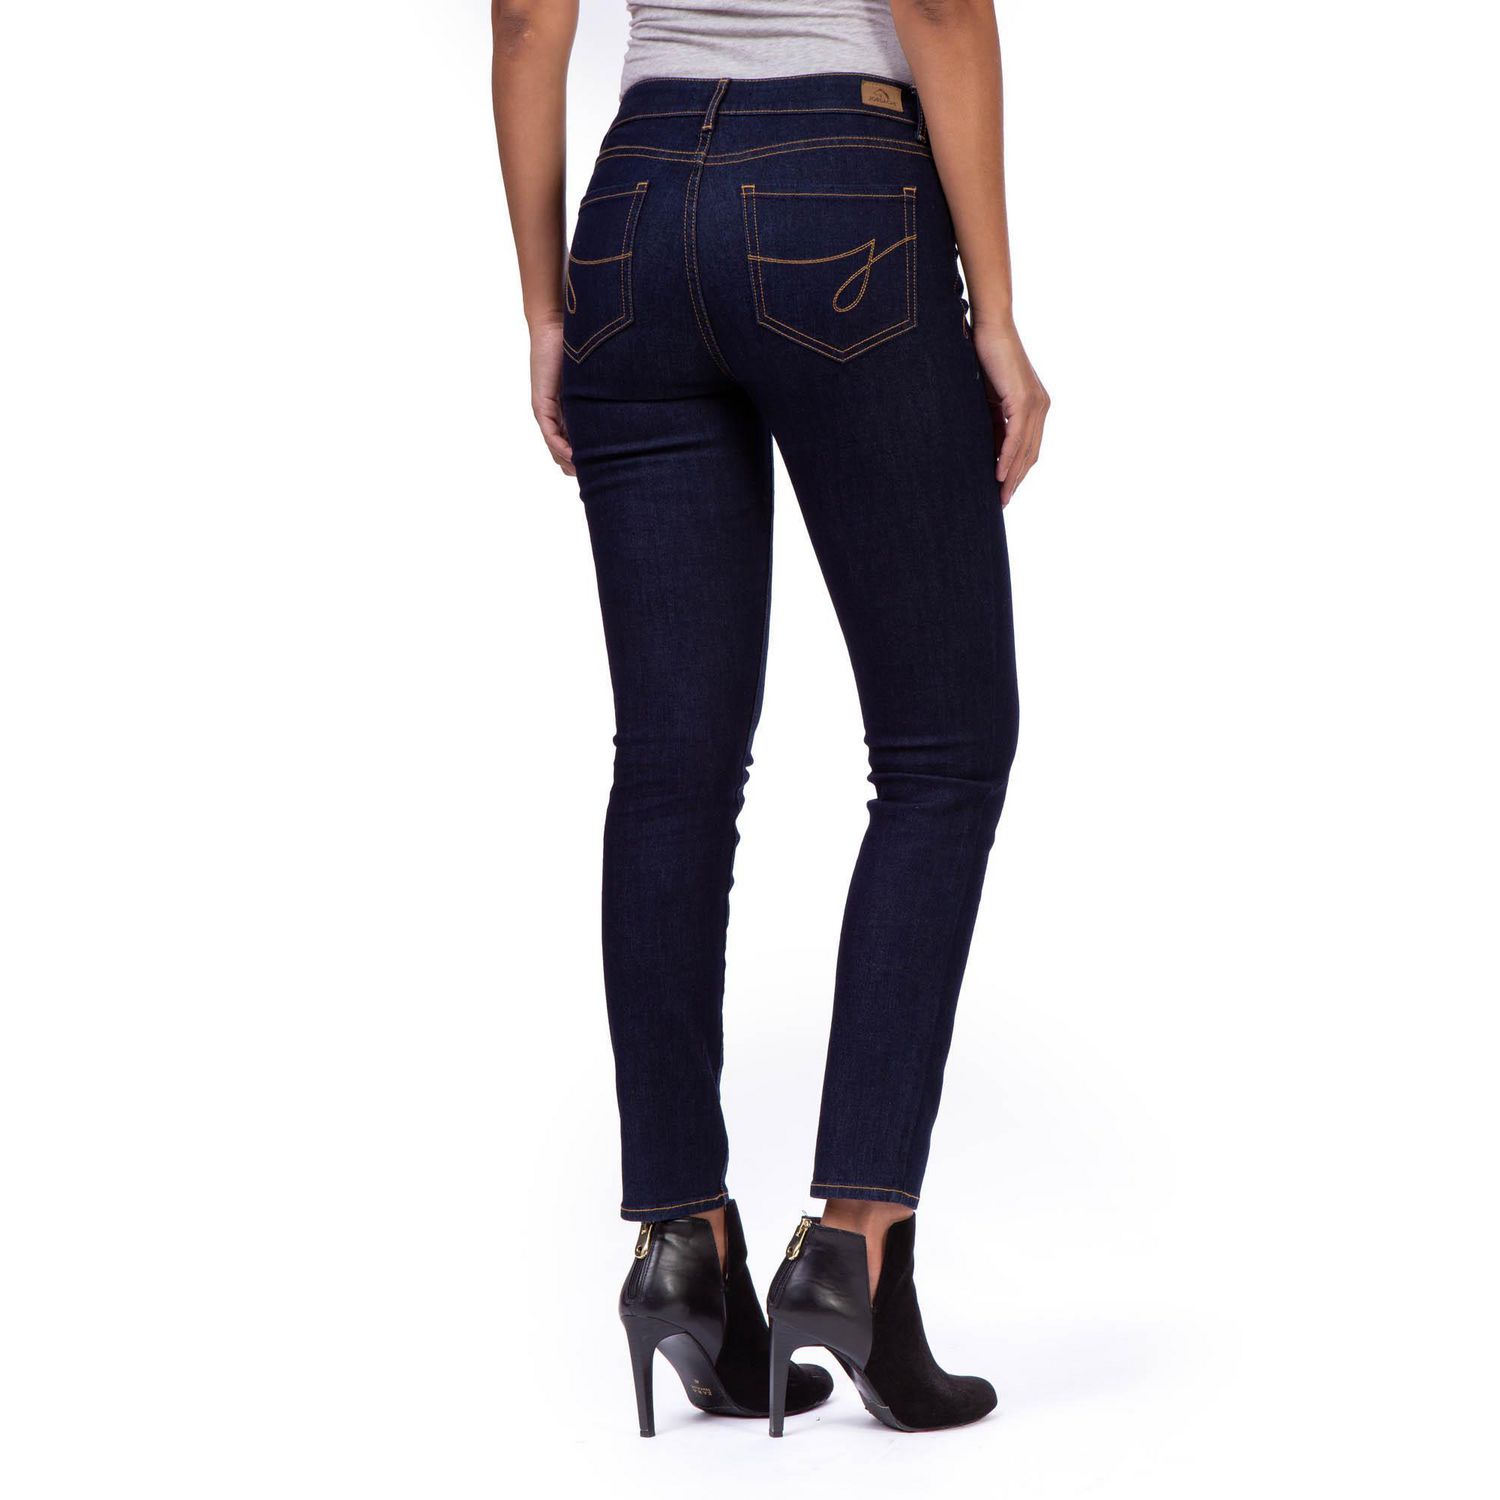 Jordache Women's Mid Rise Skinny Jean 